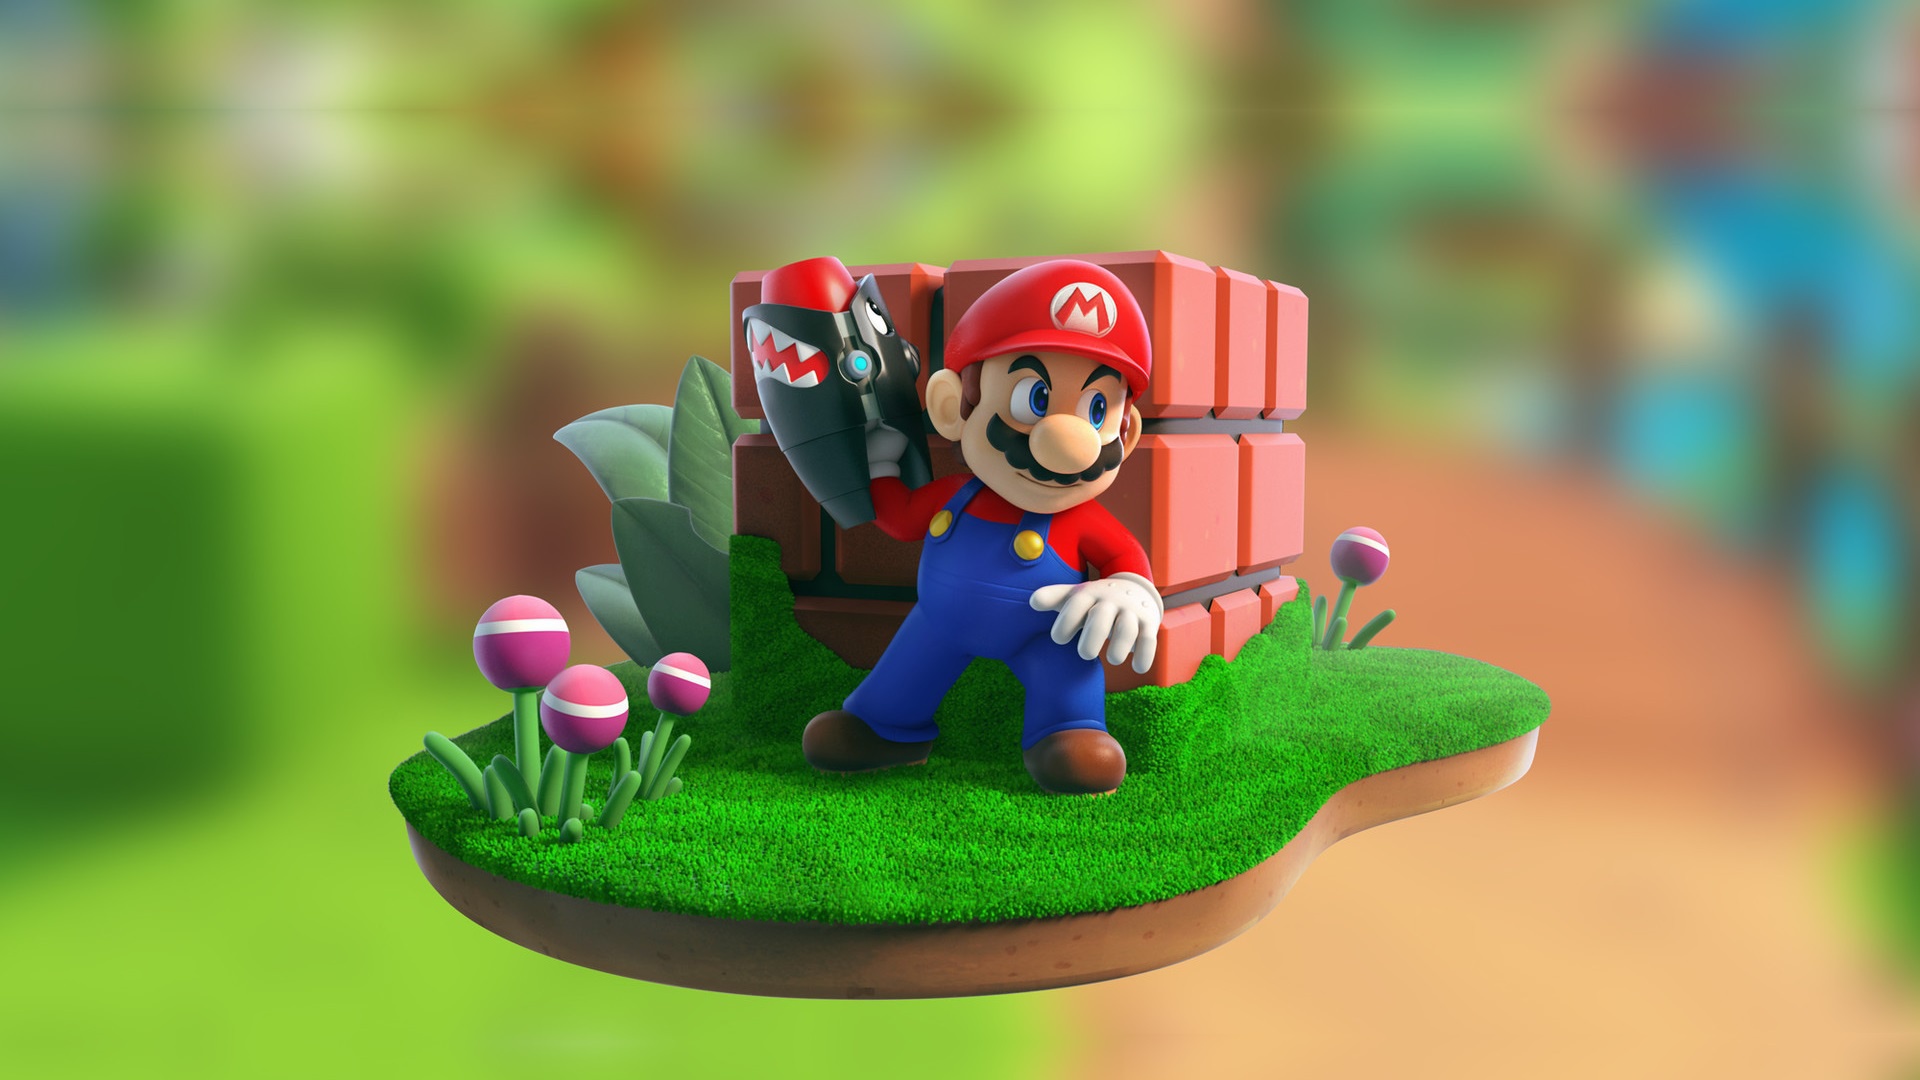 Mario bros theme. Марио 4. Супер Марио. Супер Марио БРОС 3д. Супер Марио фон.